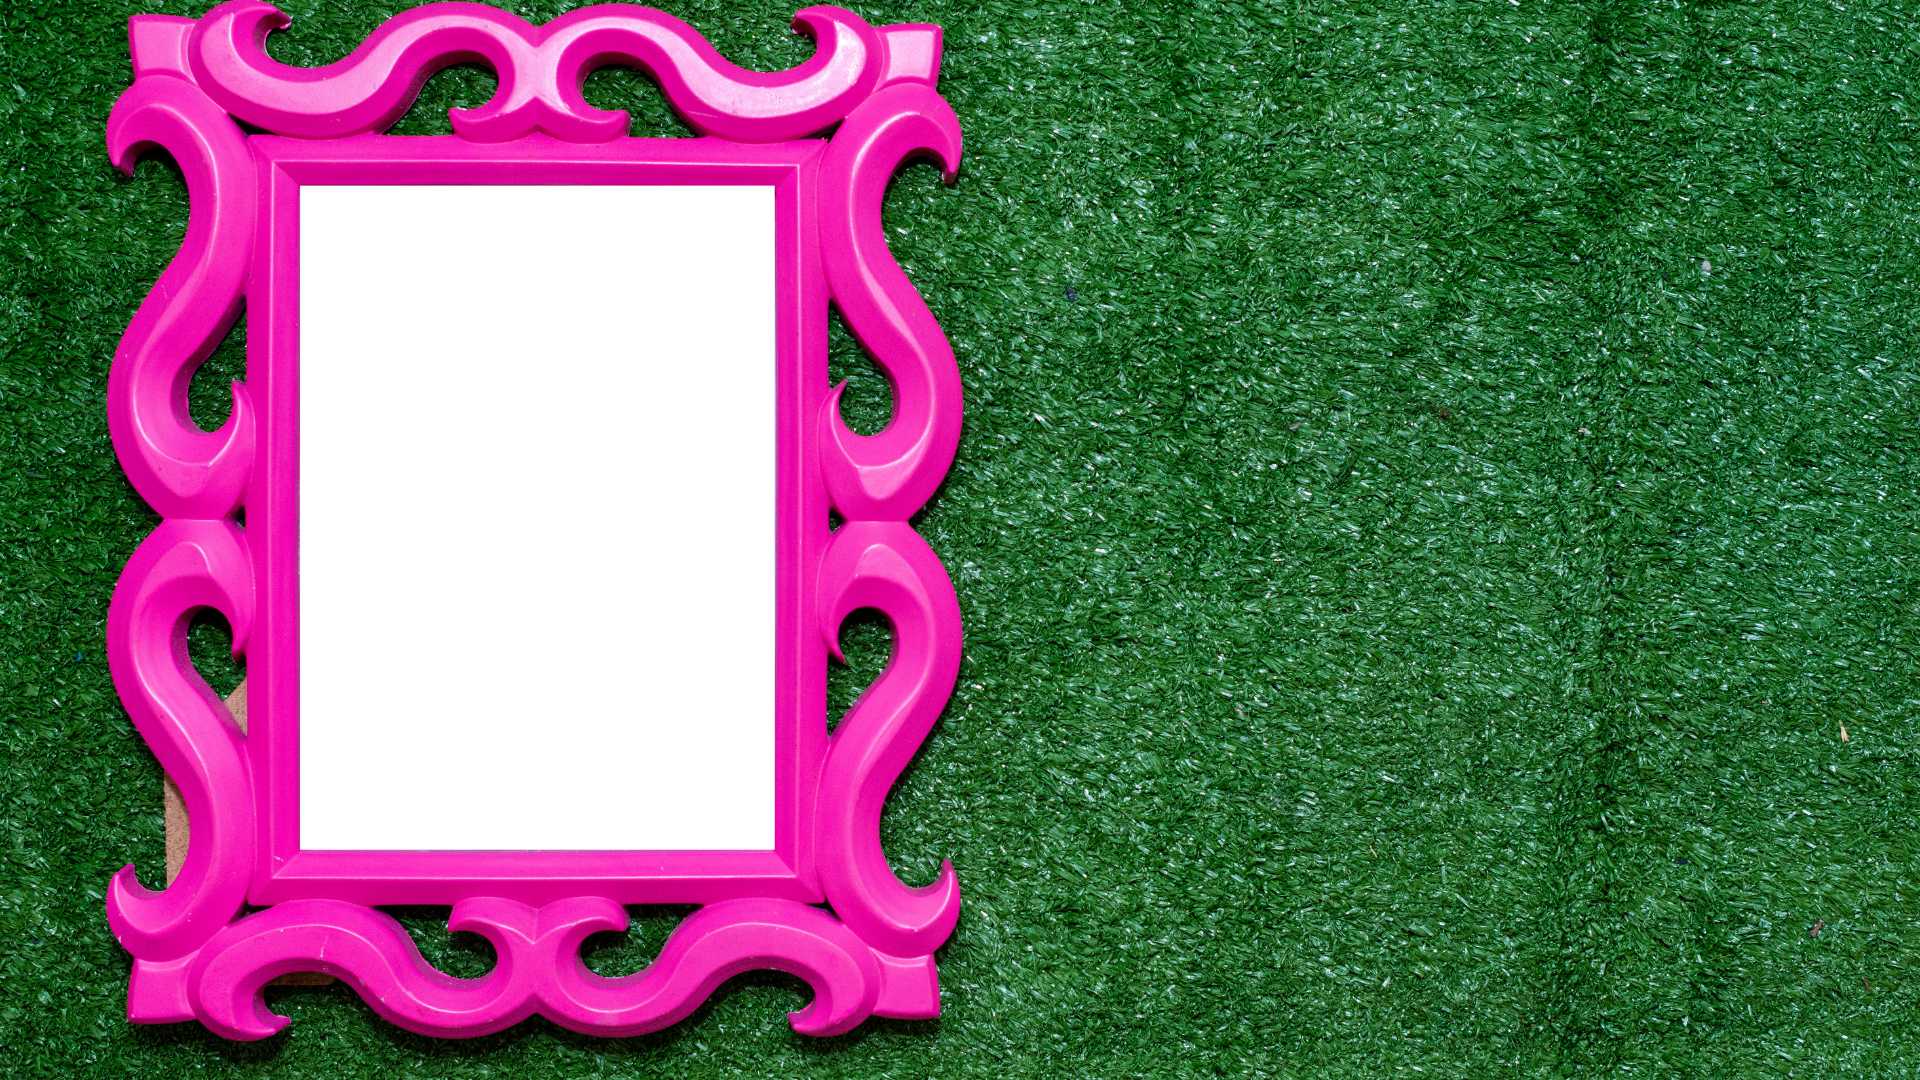 miroir rose posé sur gazon synthétique